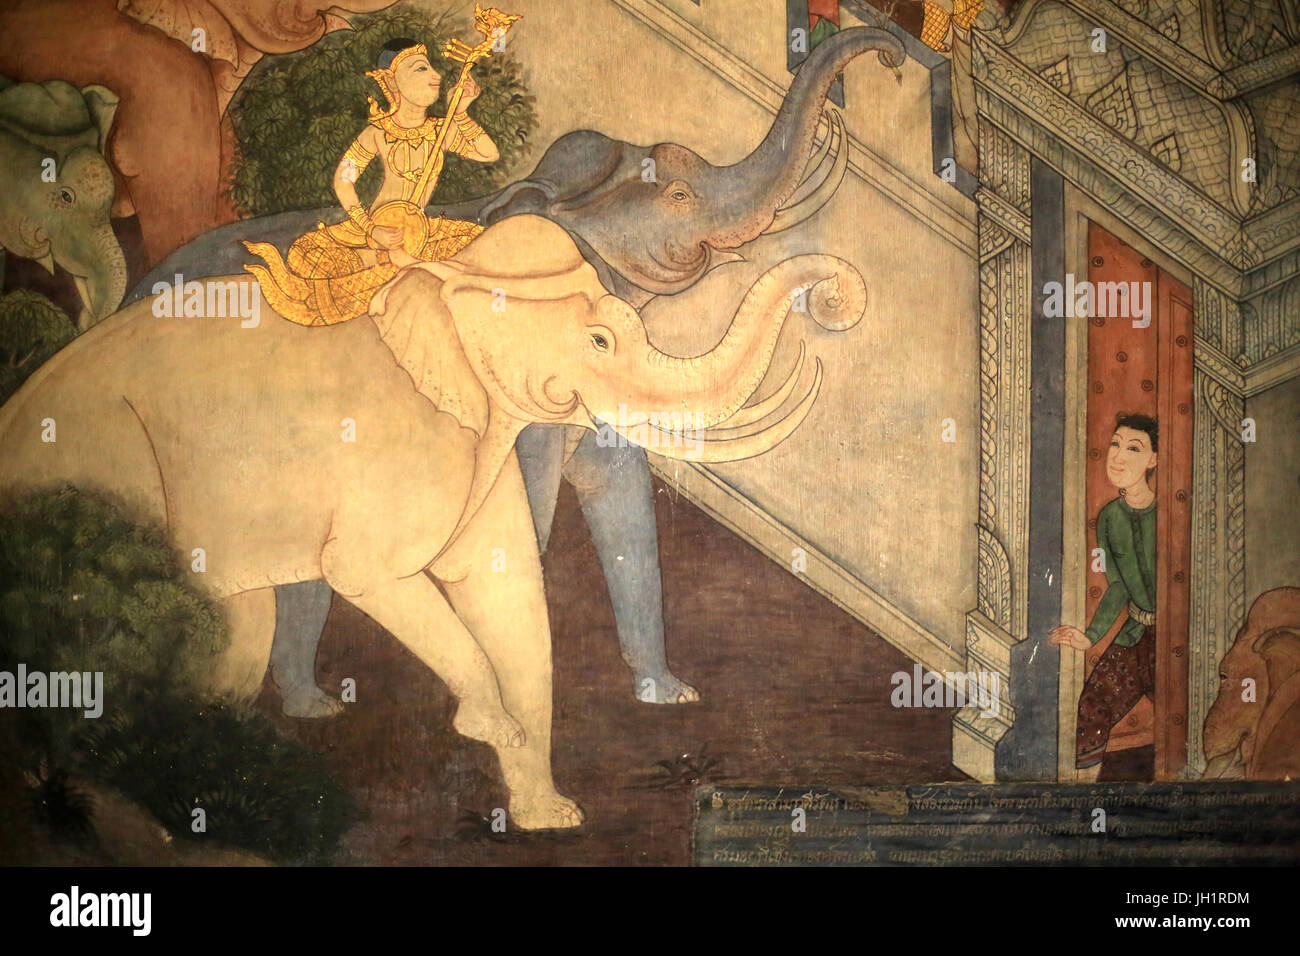 Prince Rama. Détail fresque sur les murs intérieurs du Vihara de l'époque du roi Rama III représentant le Ramakian. Wat Pho - Wat Phra Chettuphon. 1788. Bang Banque D'Images